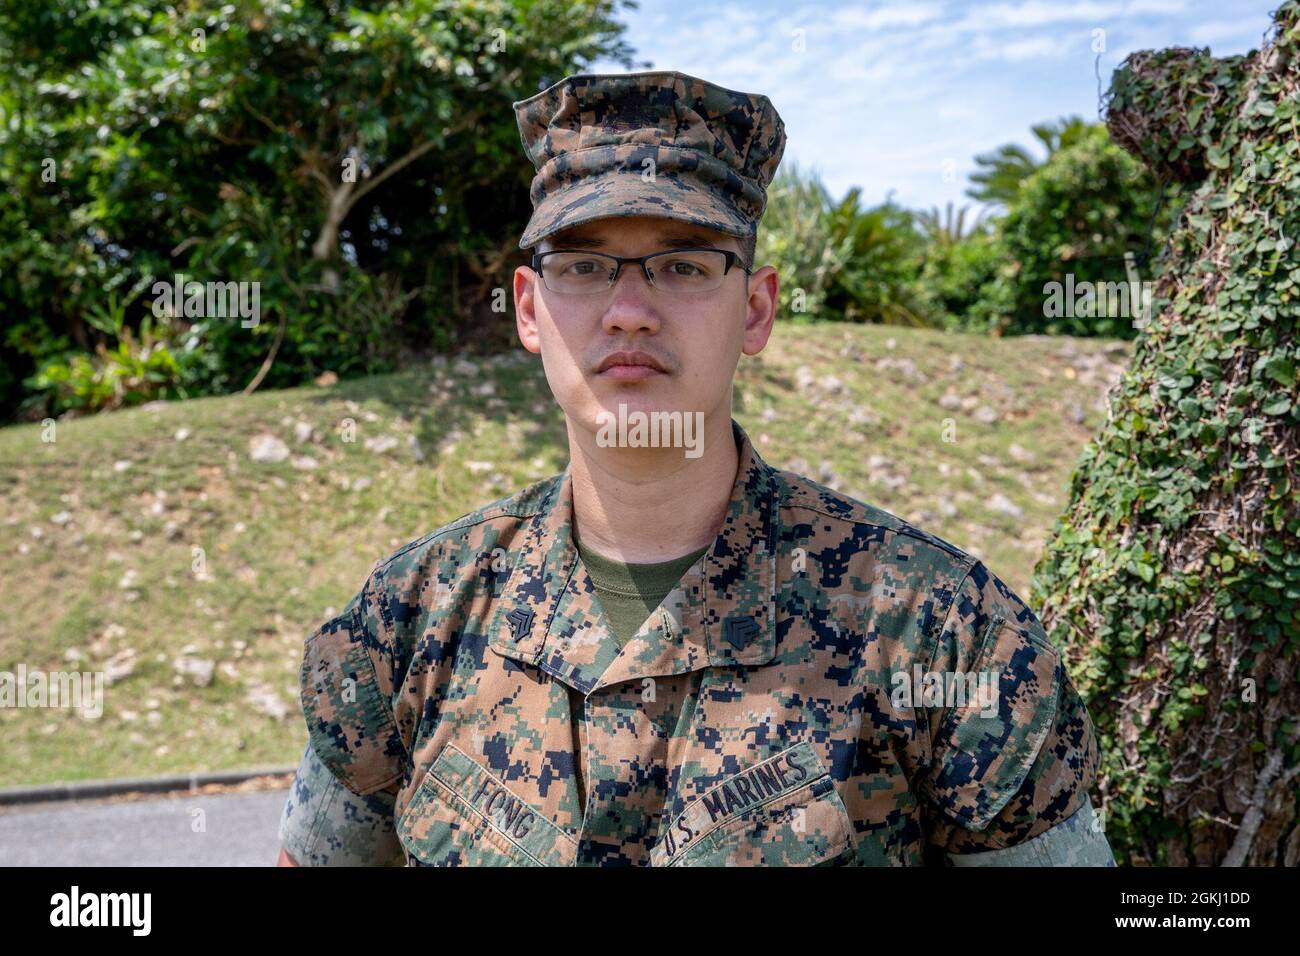 U.S. Marine Corps Sgt. George Fong, ein Chef für Meteorologie und Ozeanographie bei der 3. Marine Expeditionary Brigade, posiert für ein Foto auf Camp Courtney, Okinawa, Japan, 28. April 2021. „Hier auf der MEB ist es meine Aufgabe, das Wetter vorherzusagen. Ich bin erst seit einem Monat mit 3D MEB und mag es bisher. Ich bin nun seit acht Jahren im Marine Corps und seit etwas mehr als drei Jahren auf Okinawa. Am besten gefällt mir hier das Essen. Ich probiere gerne neue Dinge aus und erforsche sie. Ich bin durch Wanderwege auf der ganzen Insel gegangen und habe alle kleinen angrenzenden Inseln besucht.“ Stockfoto